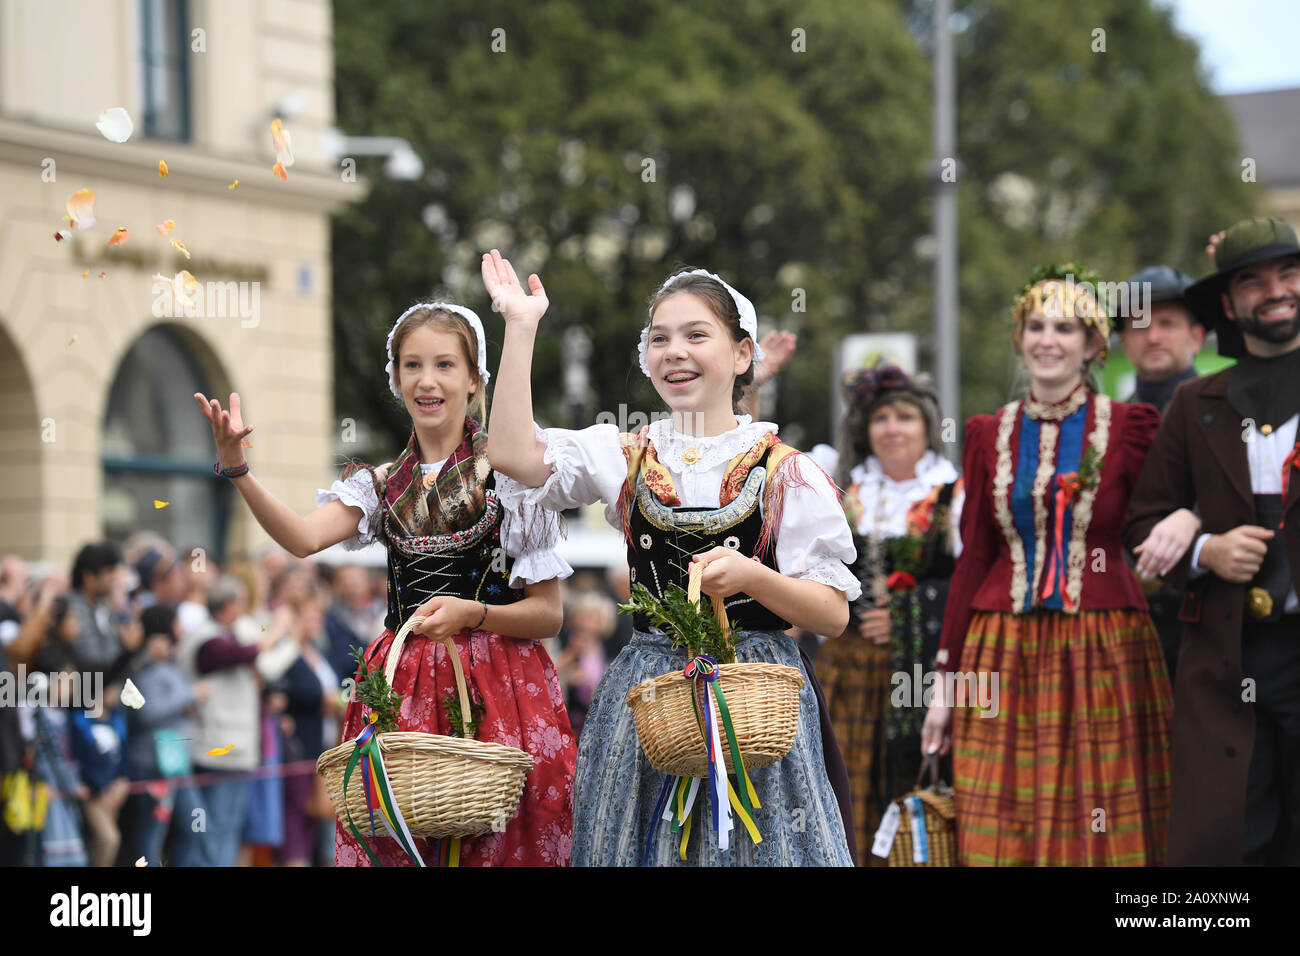 Munich, Alemania. 22 Sep, 2019. Las personas participan en el desfile de Oktoberfest en Munich, Alemania, el 22 de septiembre, 2019. Este año el Oktoberfest va desde el 21 de septiembre al 6 de octubre. Crédito: Lu Yang/Xinhua/Alamy Live News Foto de stock